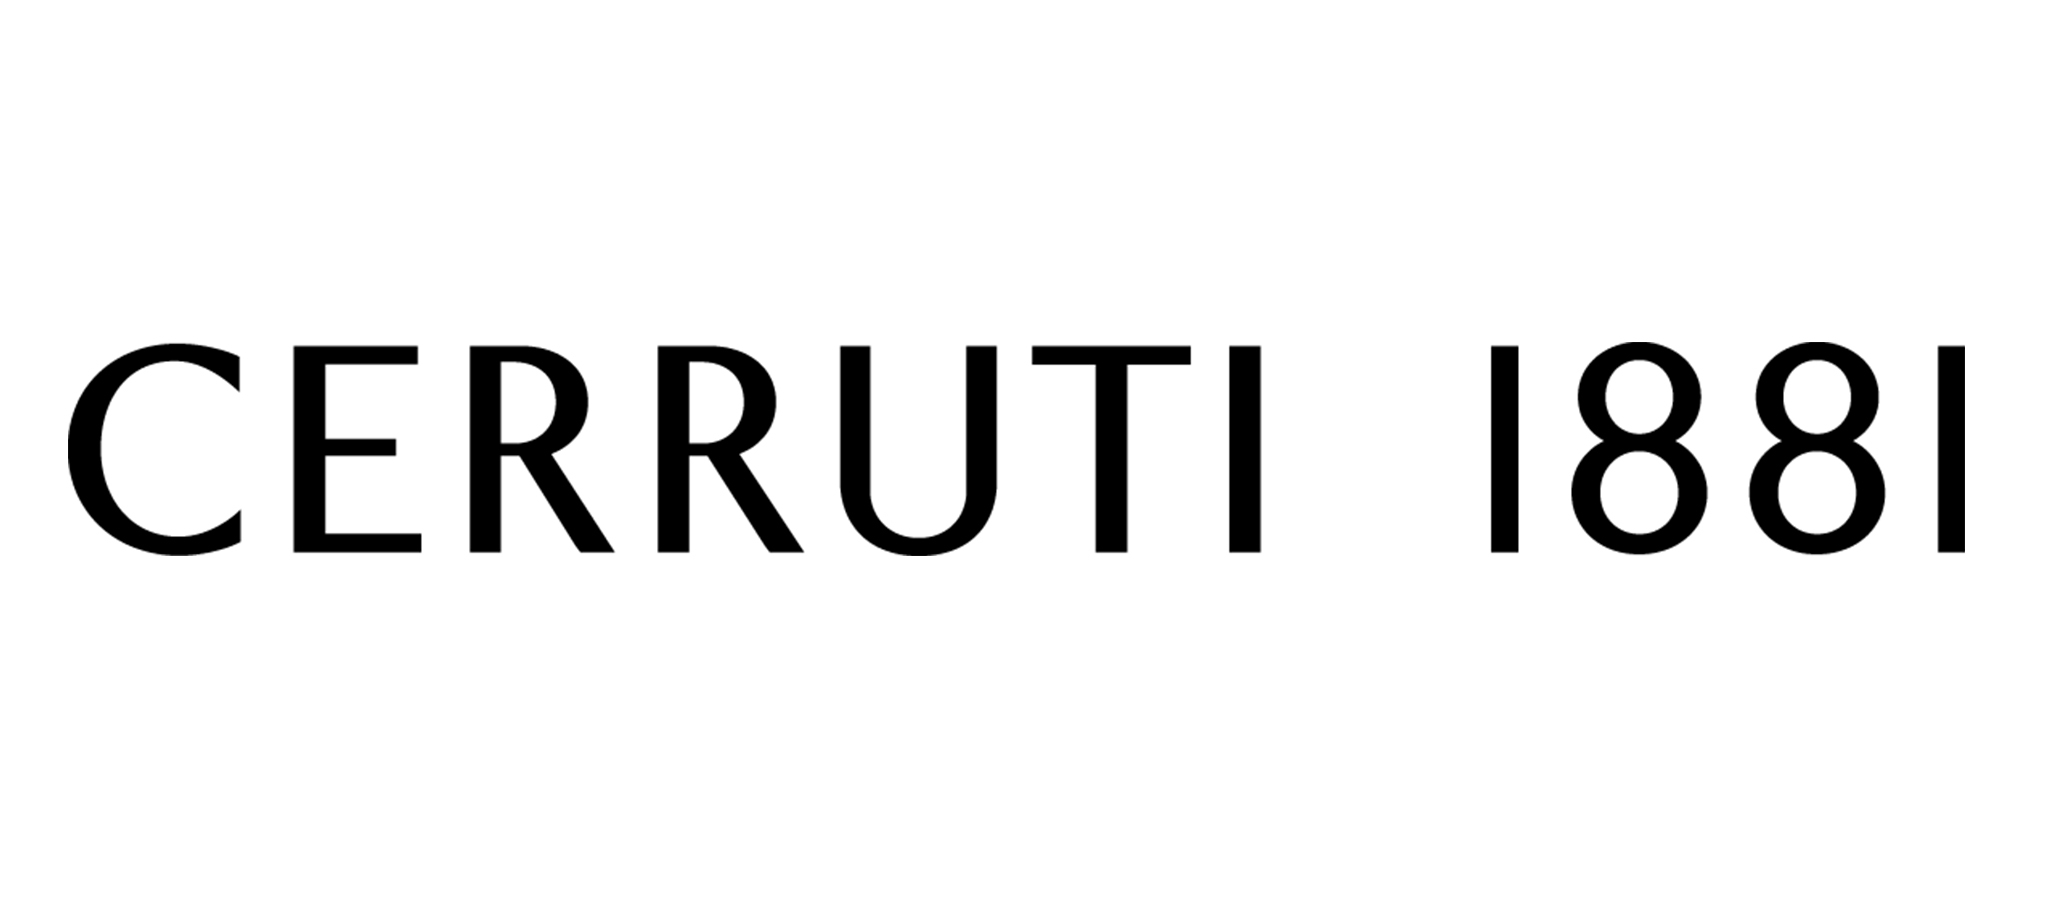 Brand Presentation: Cerruti 1881 - Hercules